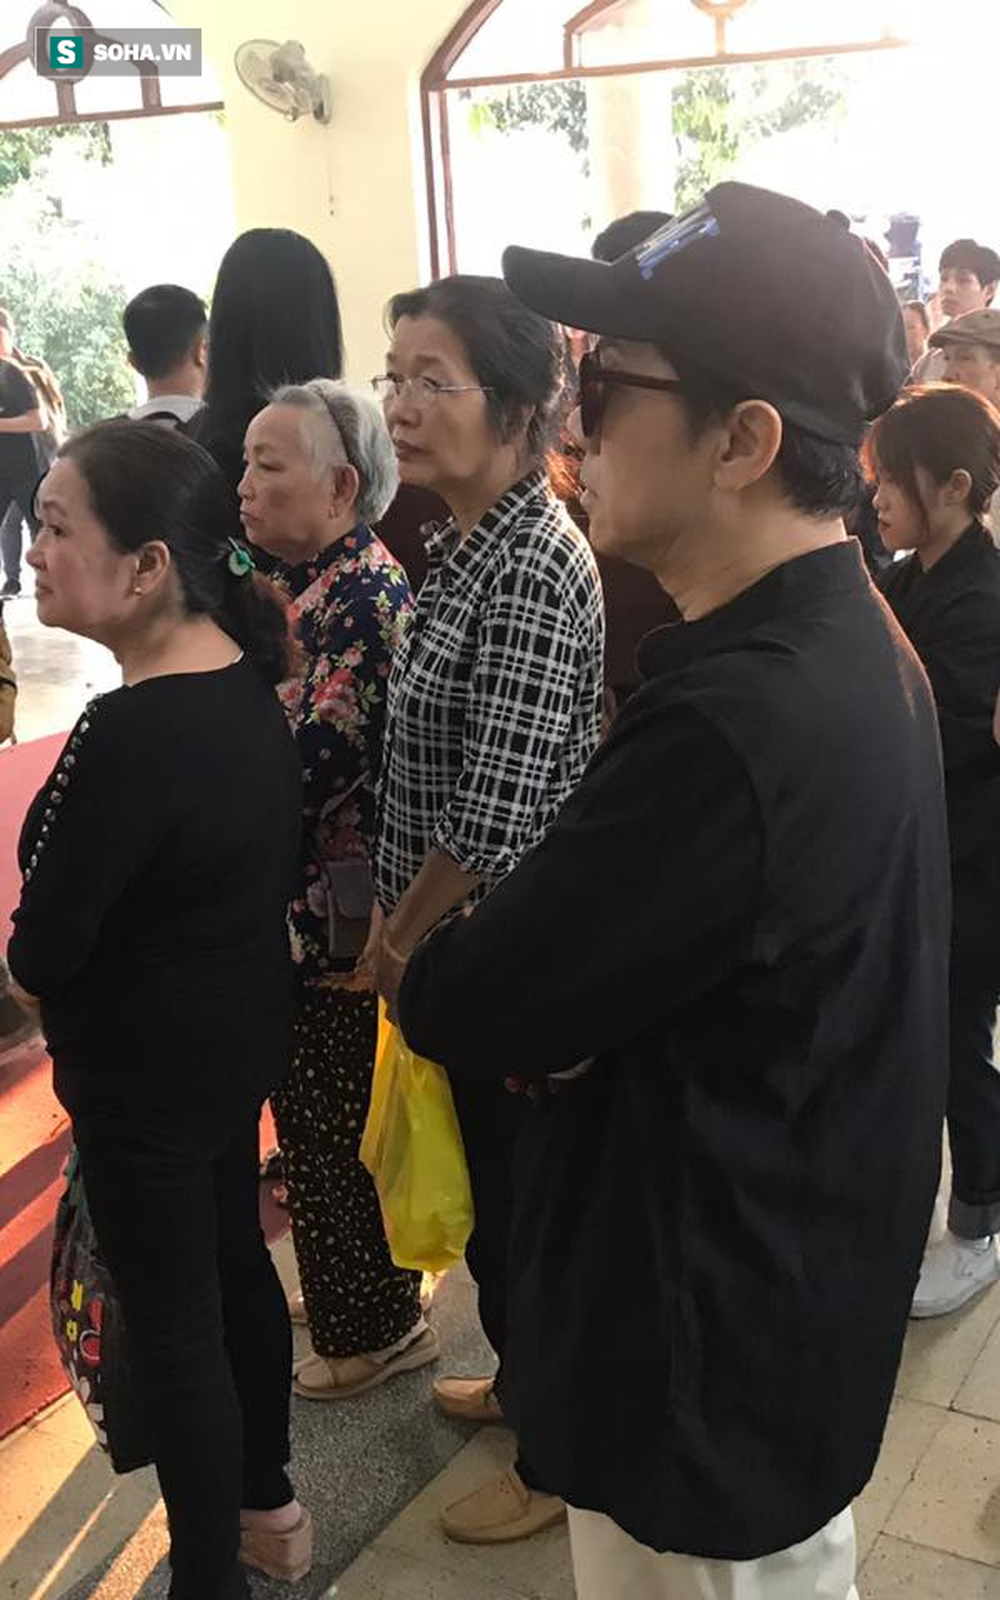  Vợ cũ, con gái, các nghệ sĩ đau đớn đưa tiễn Lê Bình về nơi an nghỉ cuối cùng - Ảnh 9.